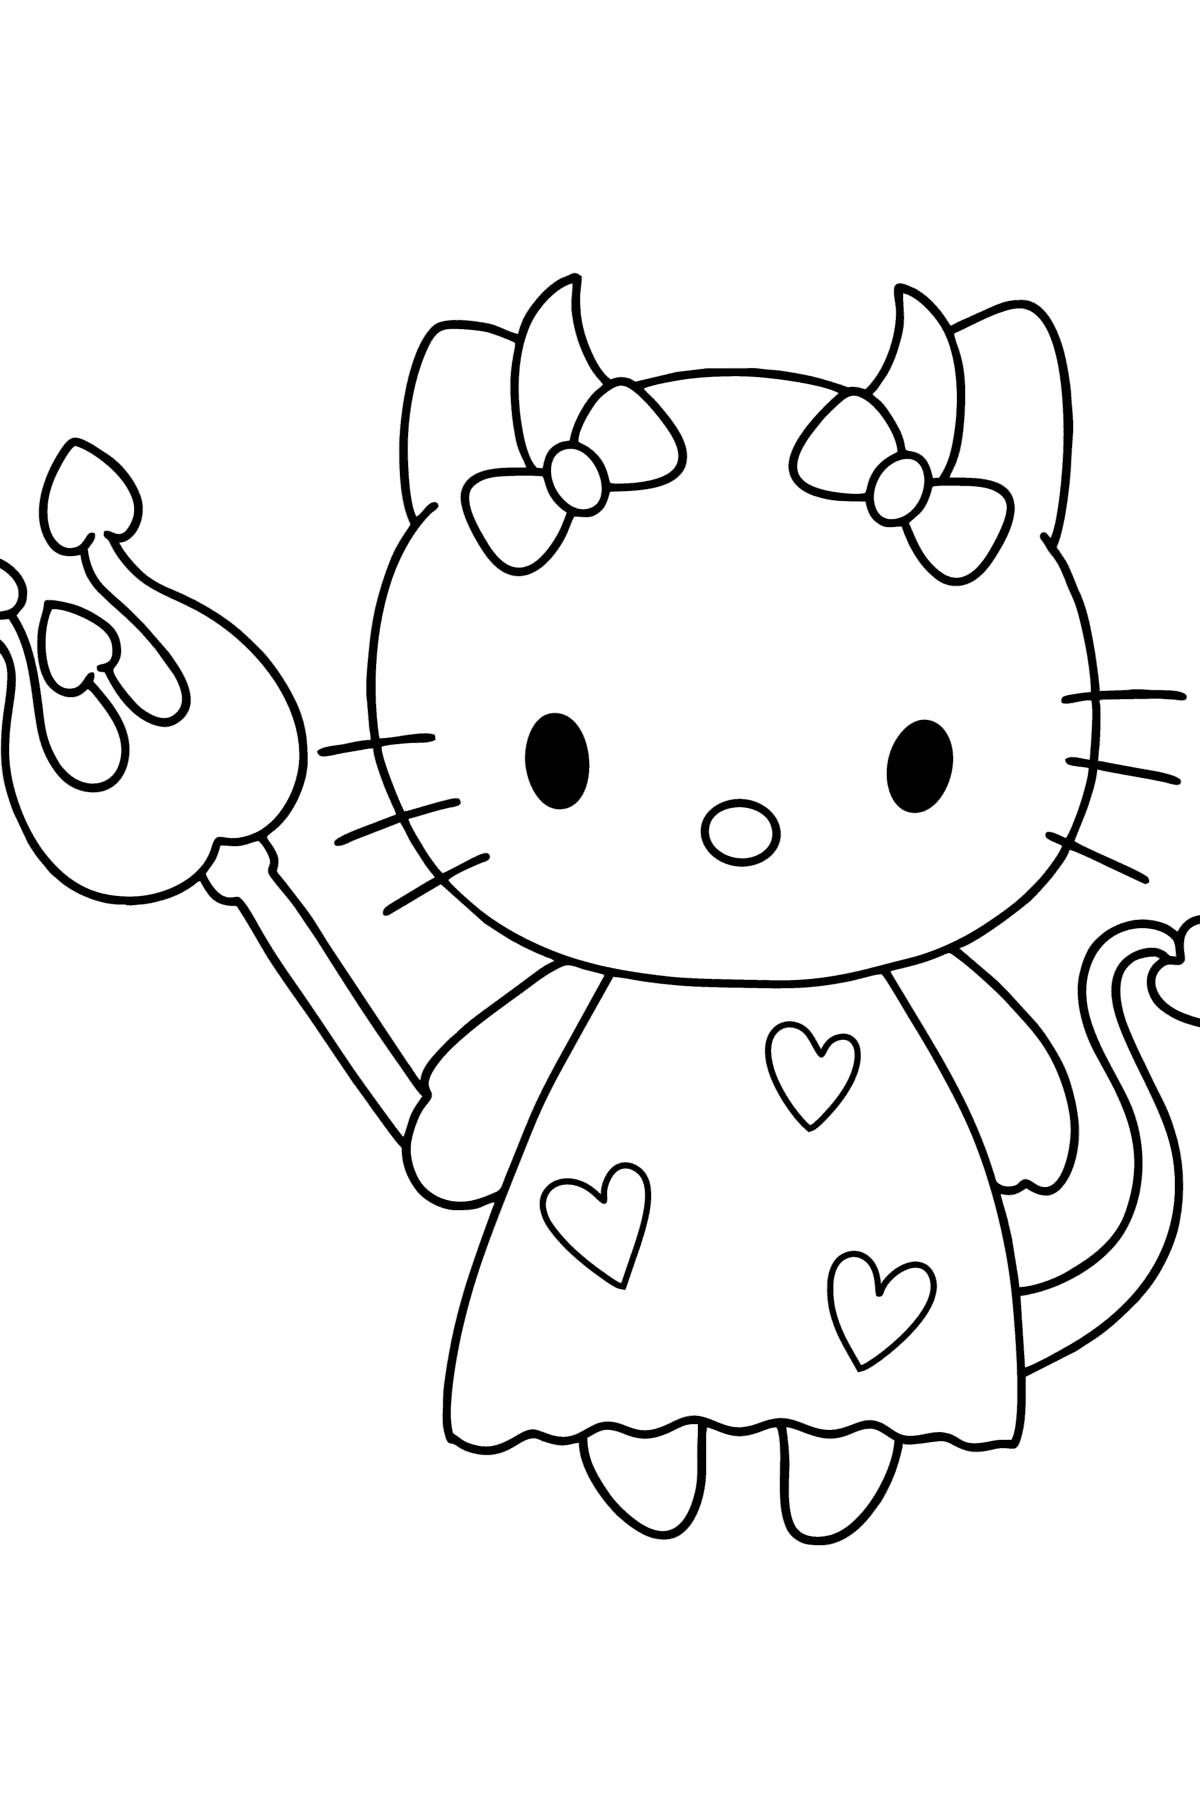 Ausmalbild Hello Kitty Devil - Malvorlagen für Kinder